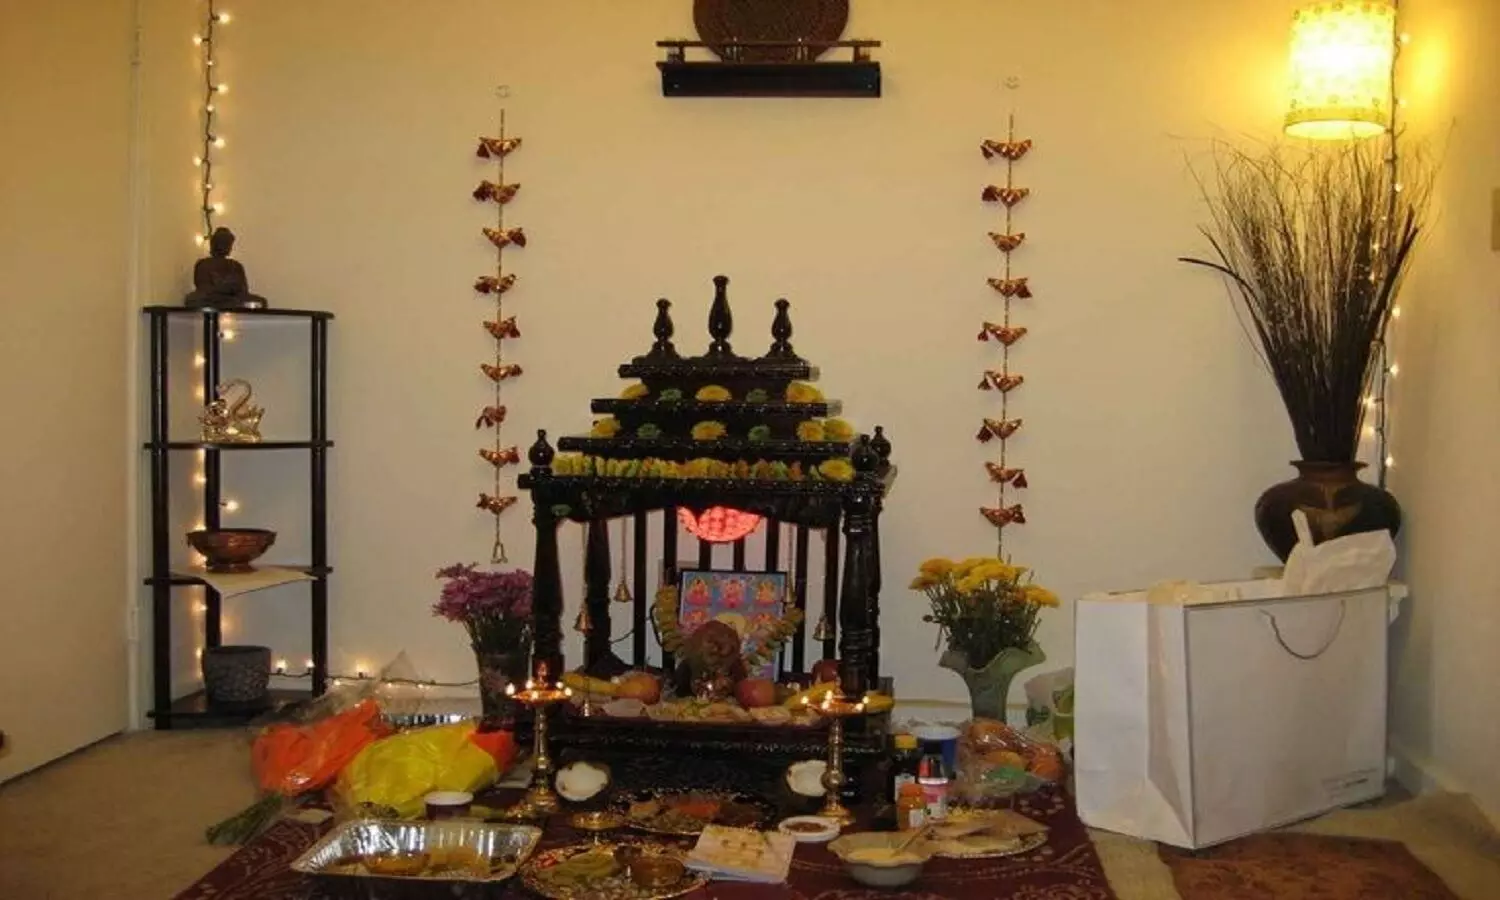 Diwali Cleaning : दिवाली में घर के मंदिर की सफाई कैसे करें? जानें बेहद ही आसान तरीका